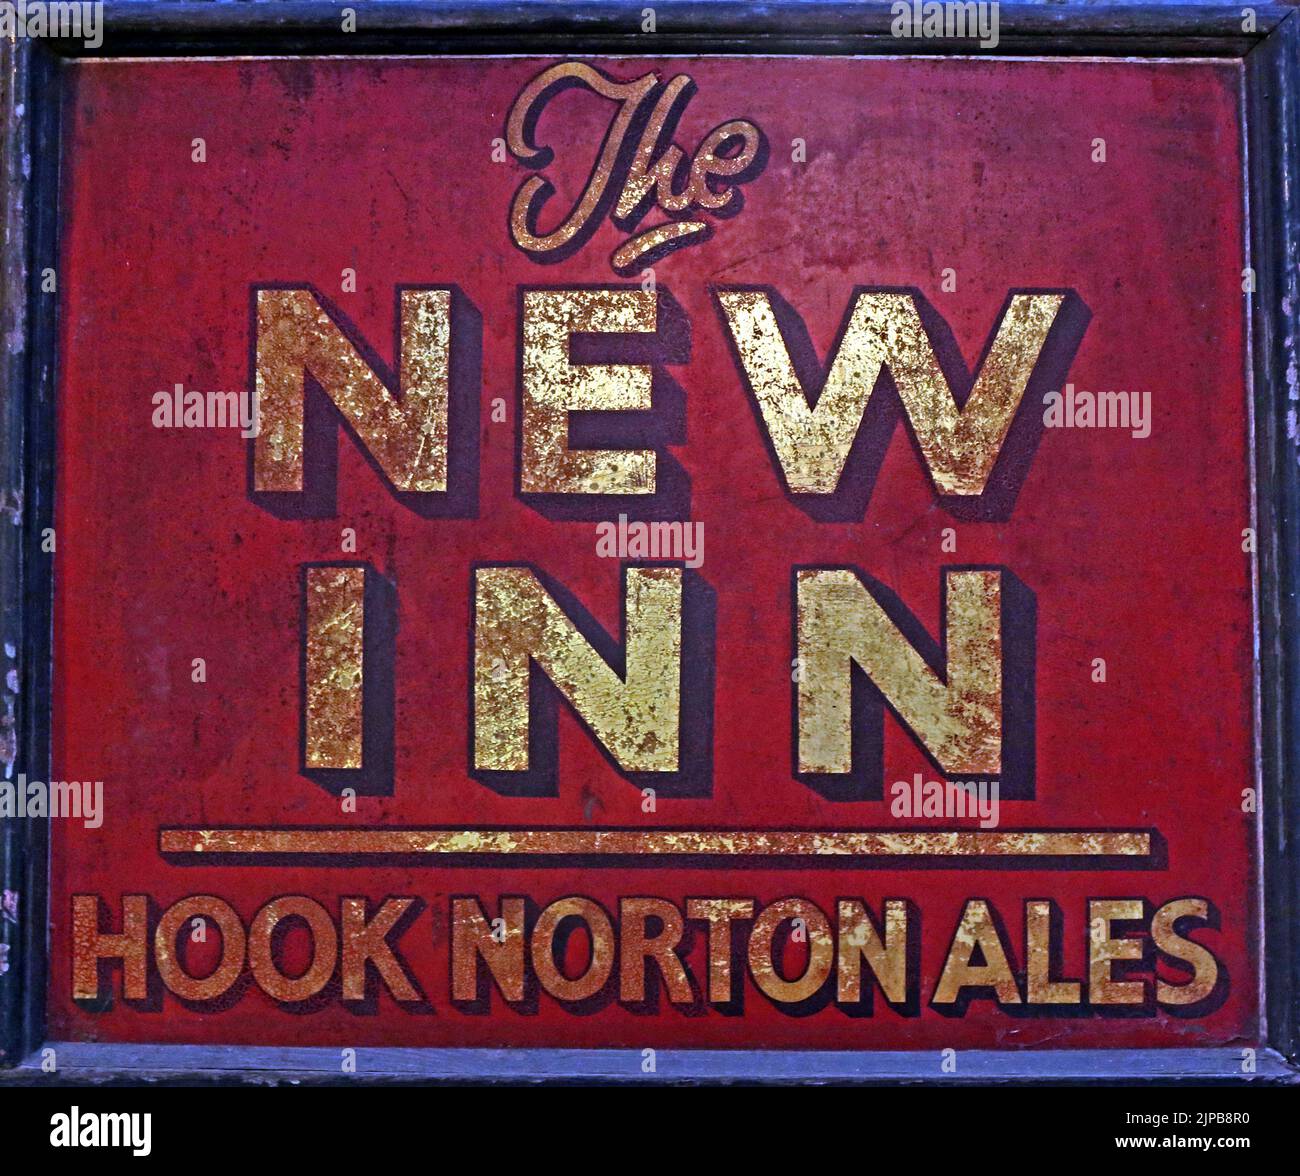 The New Inn - Hook Norton Ales classico segno pub, Oxfordshire artigianato birre, Hook Norton, Banbury, Oxen, INGHILTERRA, REGNO UNITO, OX15 5NY Foto Stock